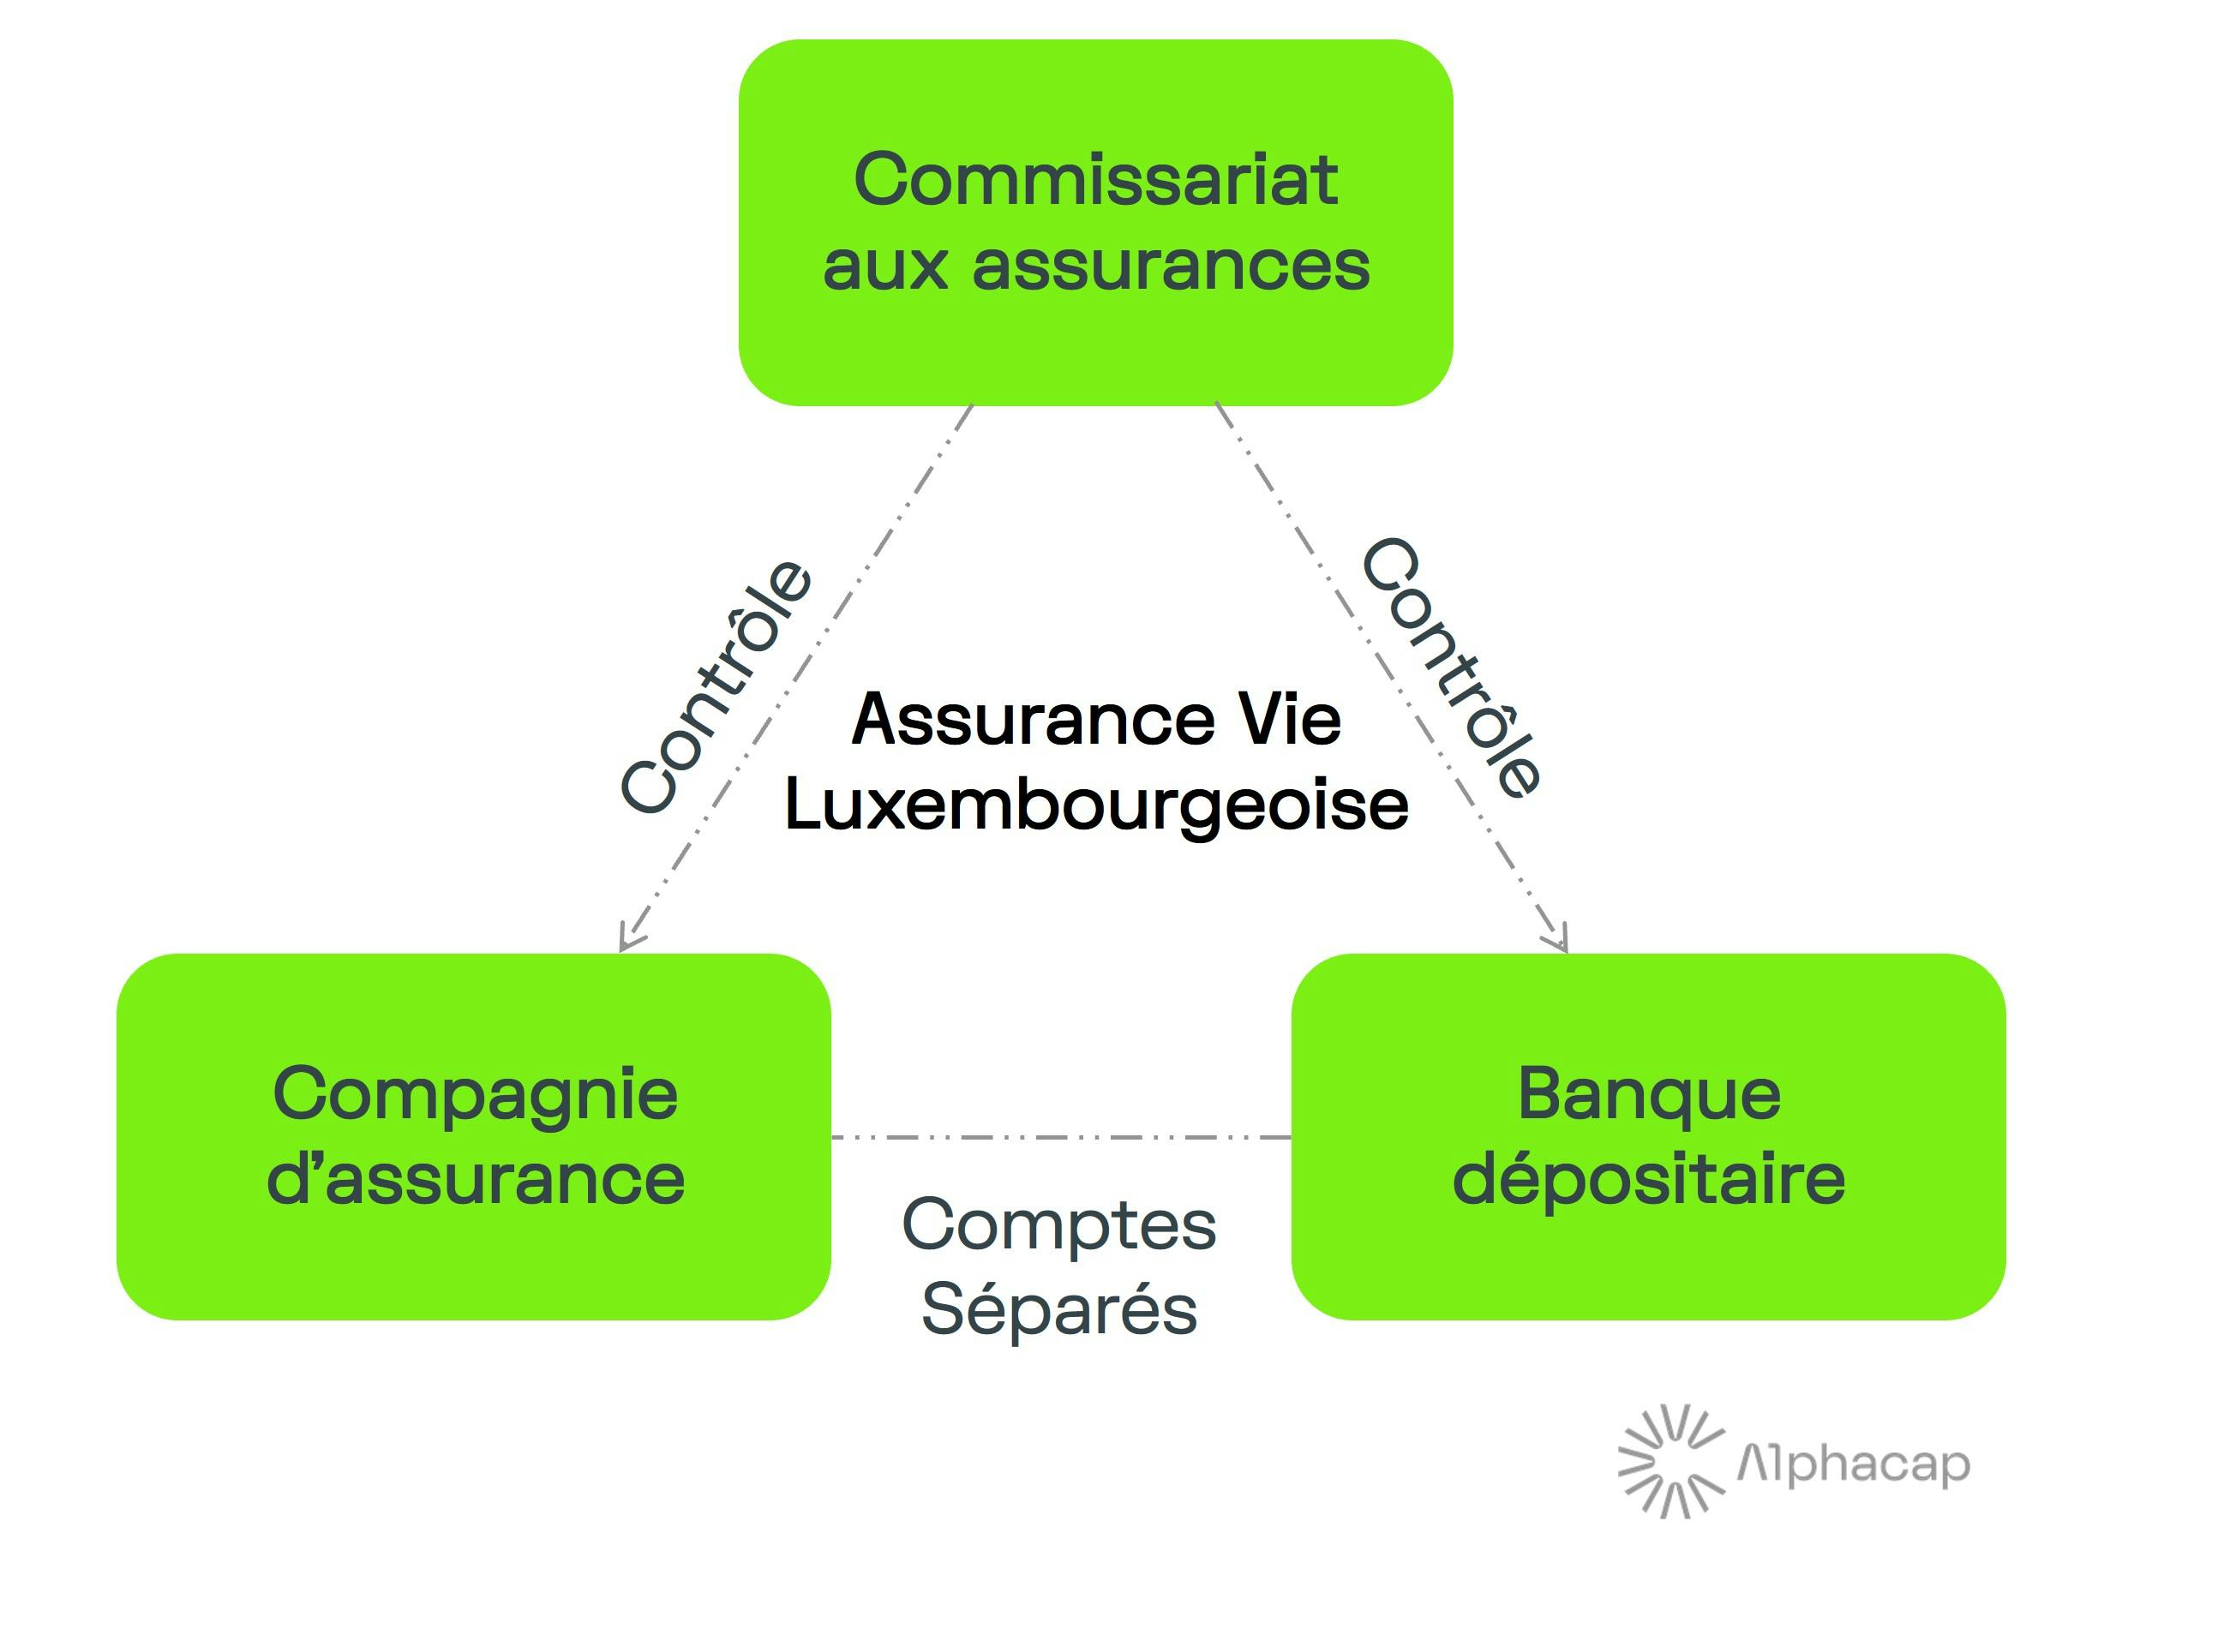 Le triangle de sécurité de l'assurance-vie luxembourgeoise : compagnie d'assurance, banque dépositaire et commissarriat aux assurances